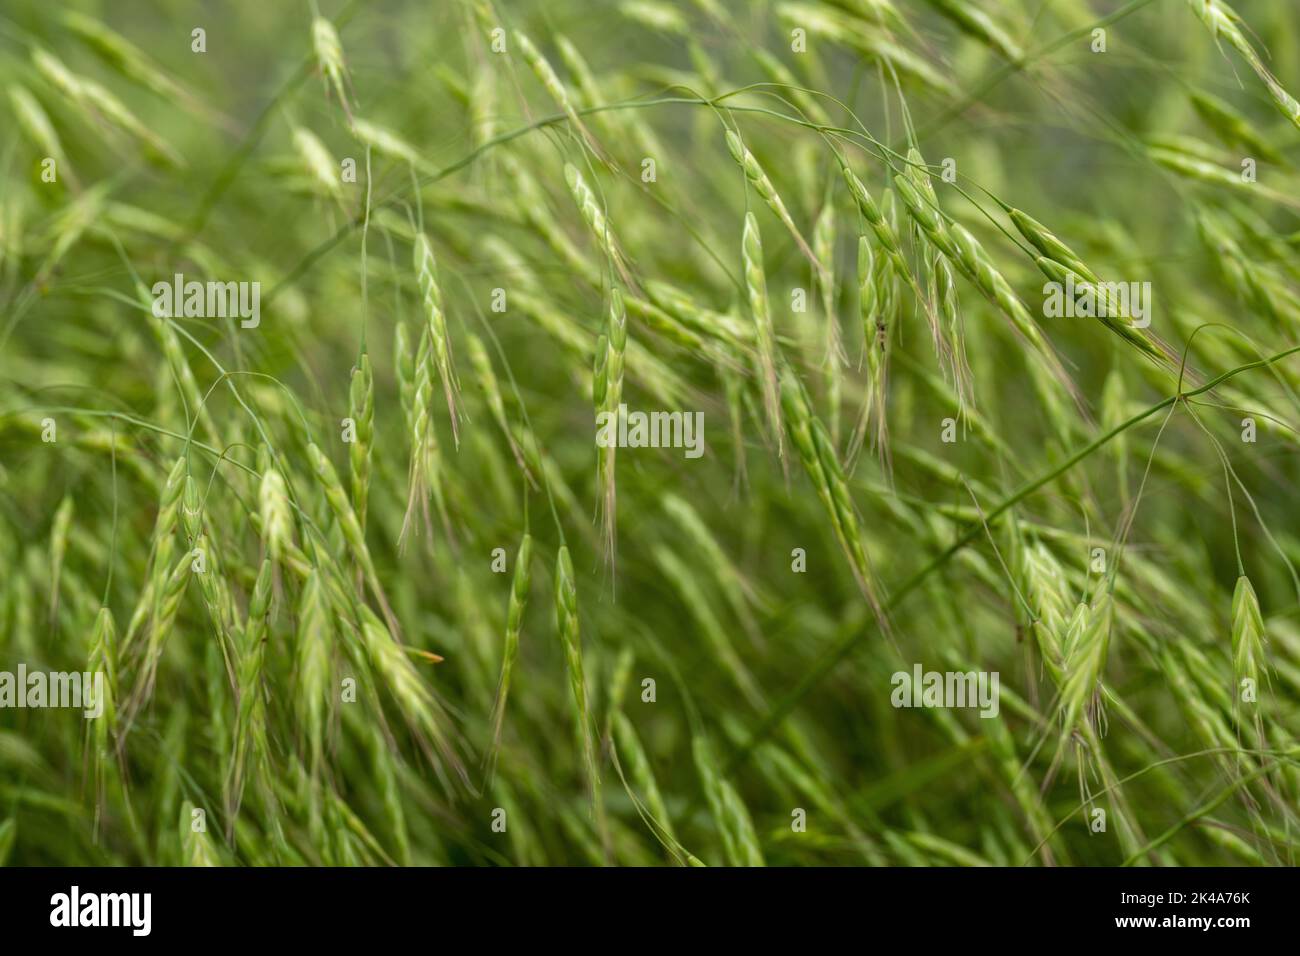 Eine Selektion von grünen Körnern in einem Feld Stockfoto